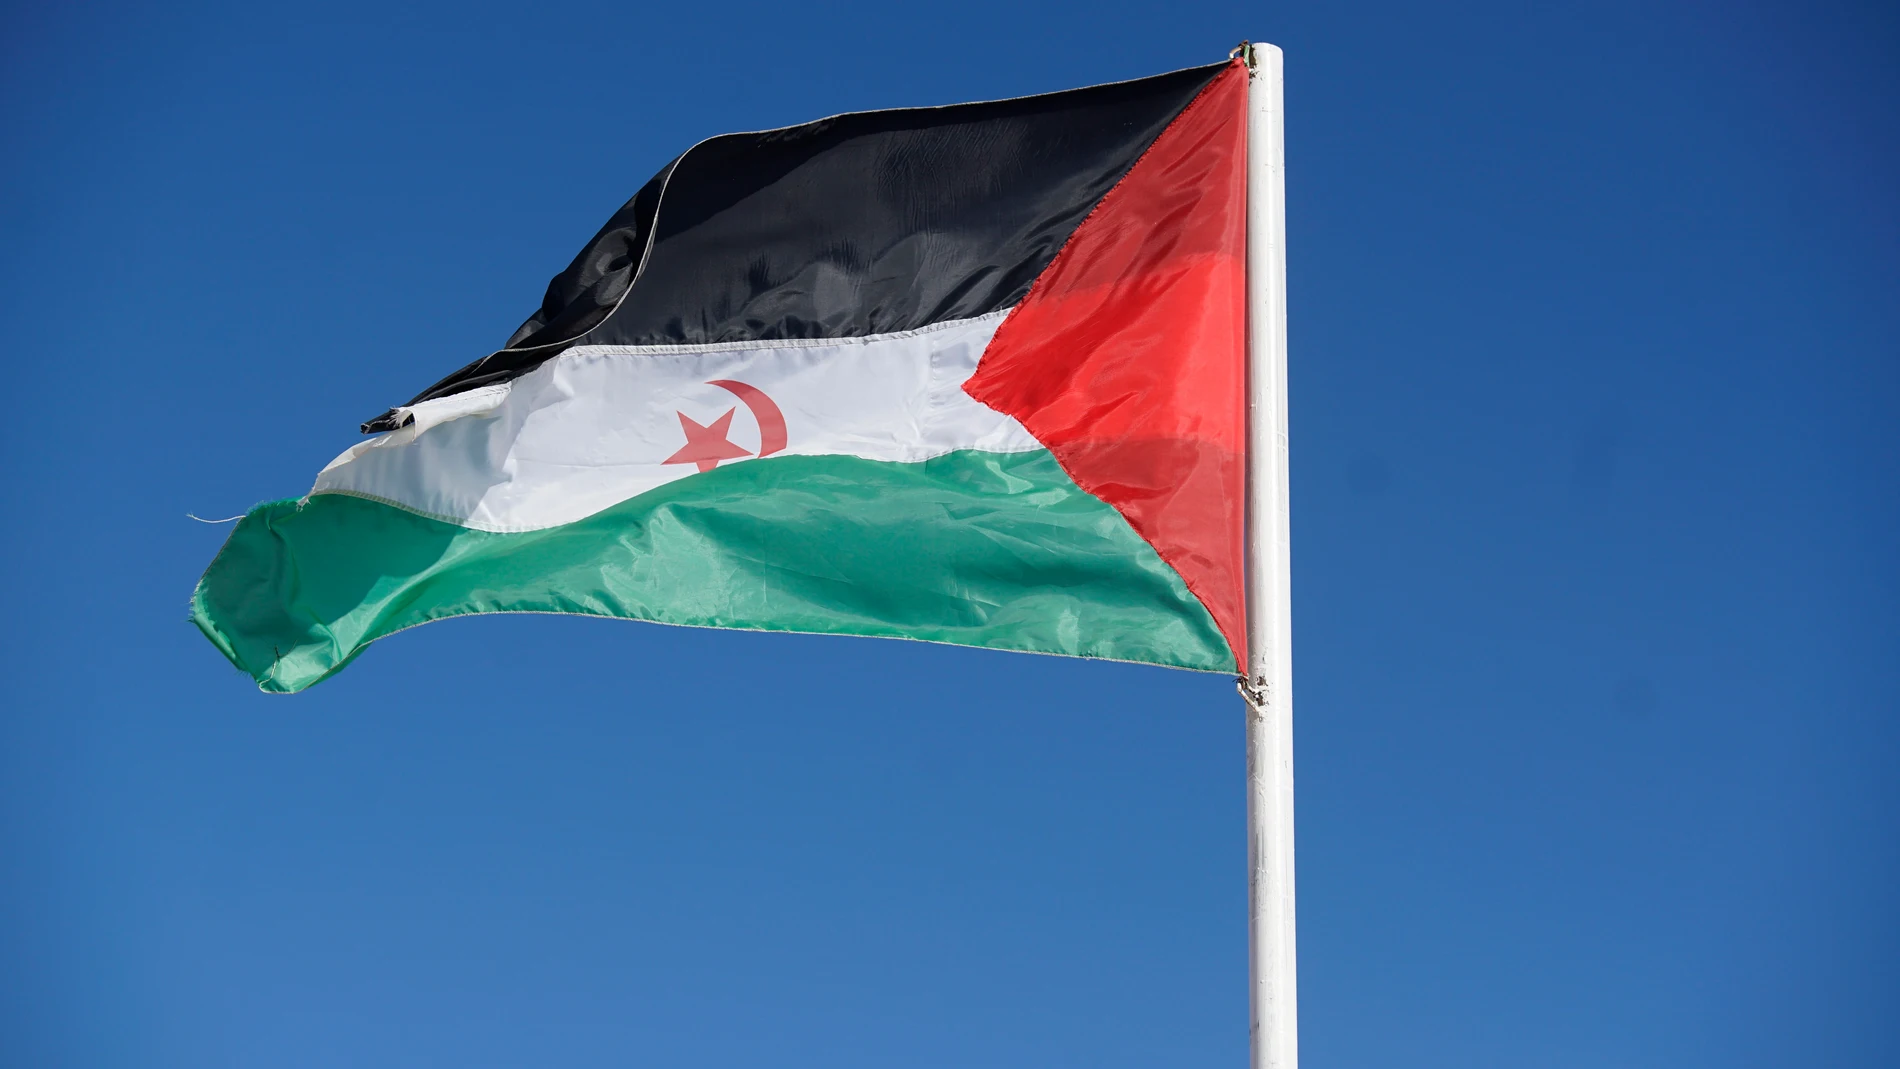 Bandera de la República Árabe Saharaui DemocráticaCEDIDA POR EL FRENTE POLISARIO (Foto de ARCHIVO)23/12/2019